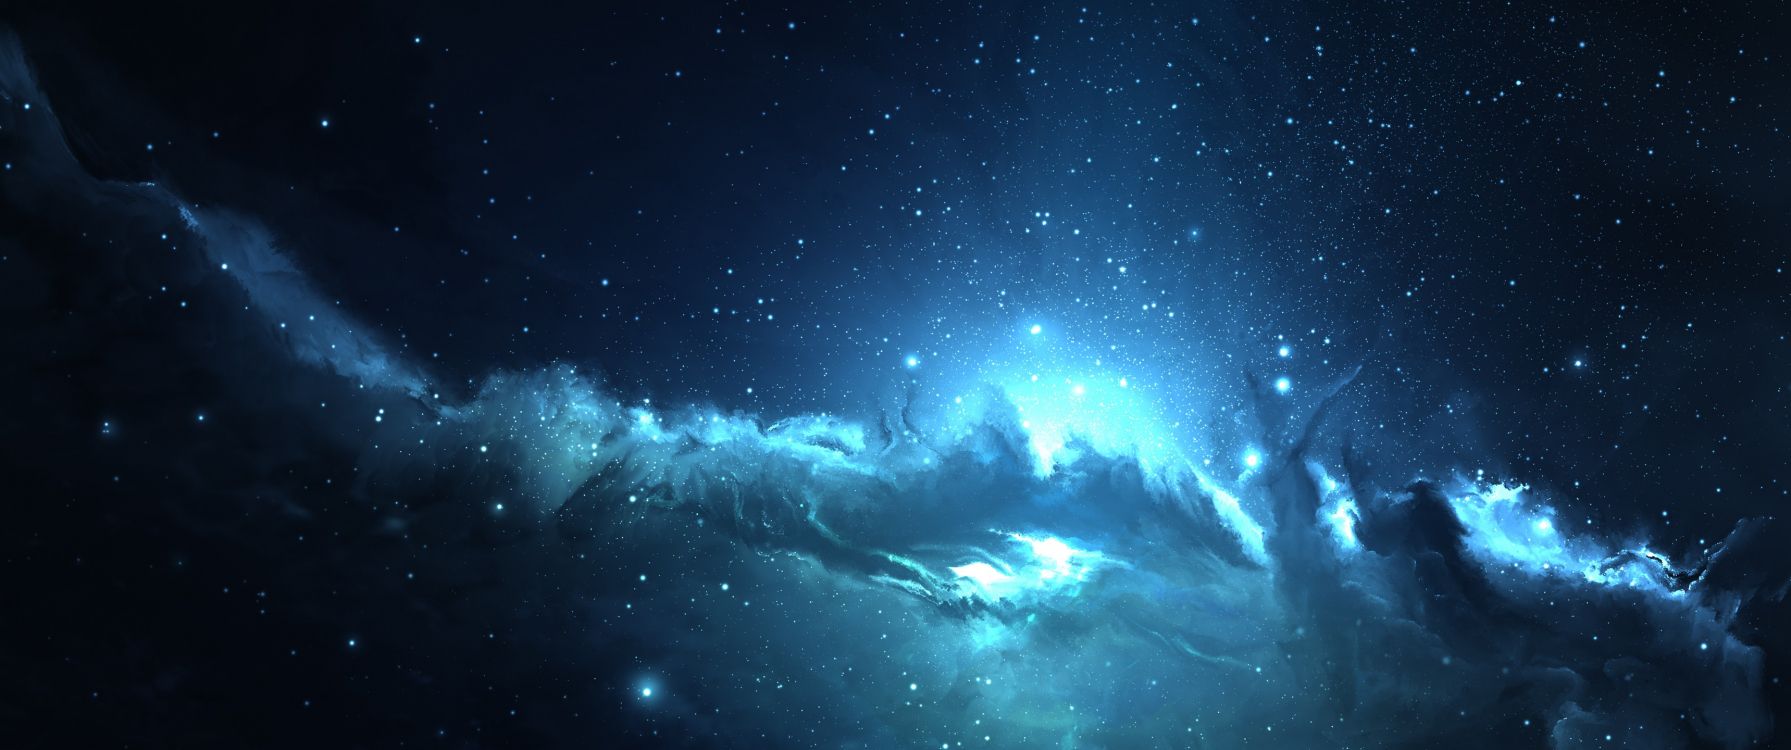 blue galaxy  nebula  Papel de parede azul para iphone Papeis de parede  galaxia O fundo da galáxia